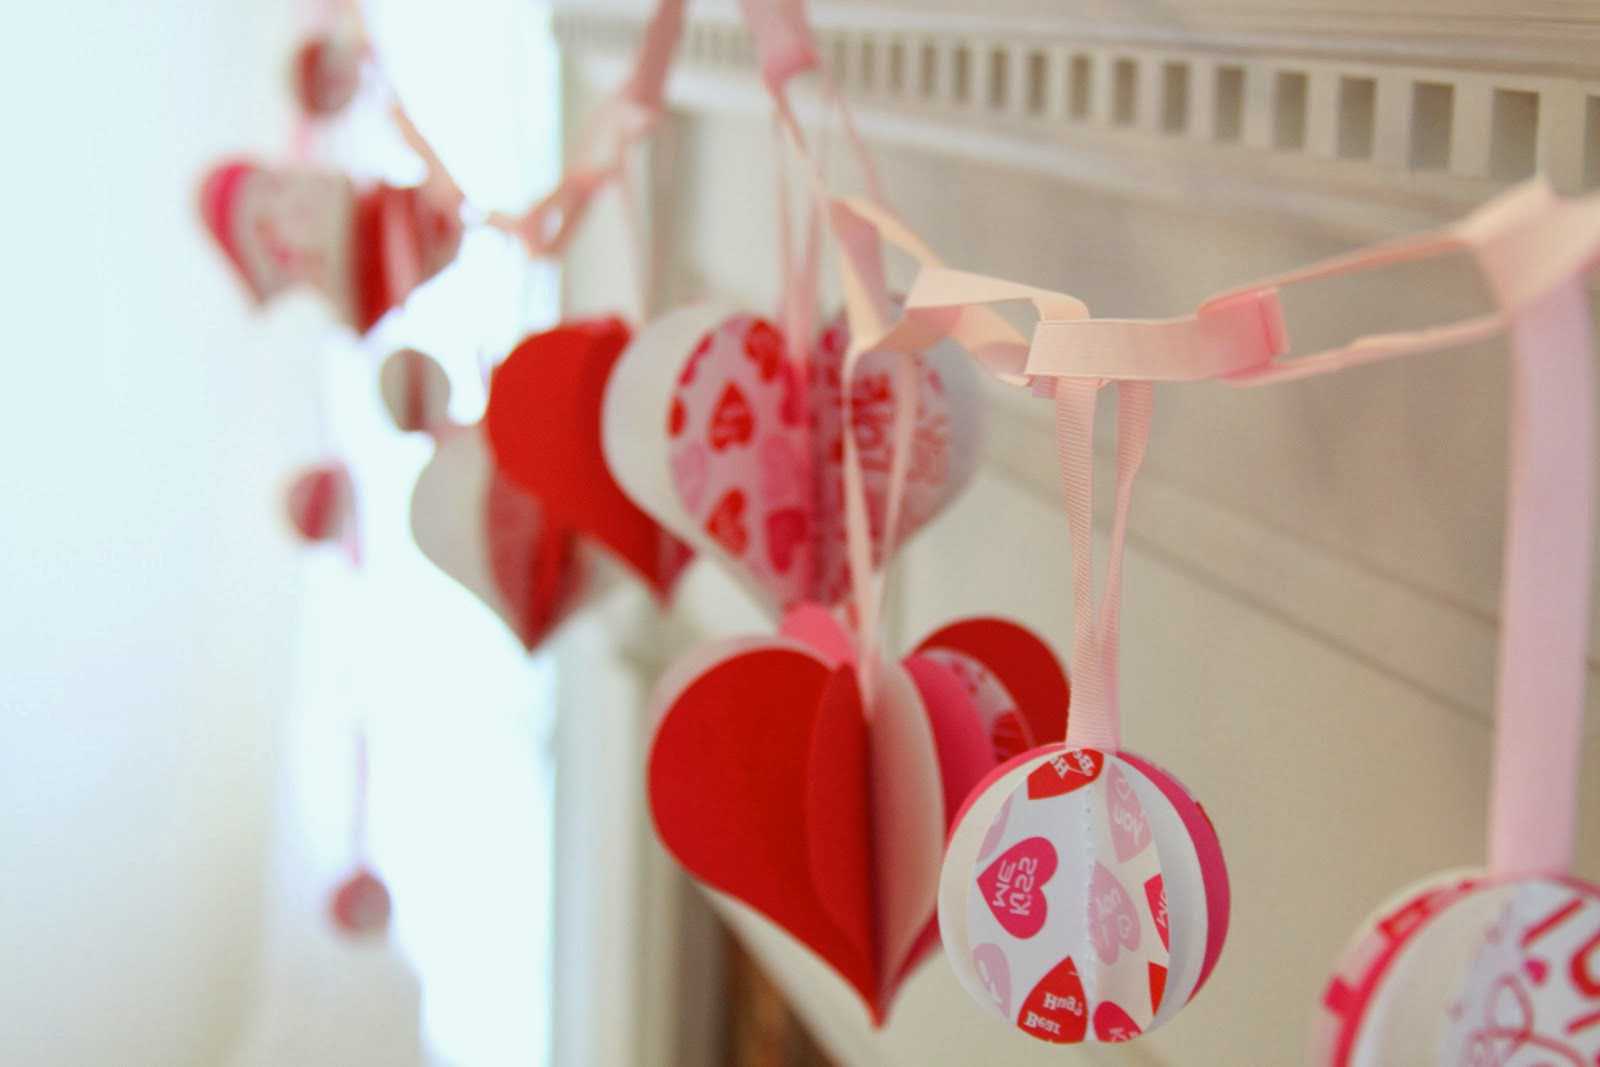 Belle décoration de la salle avec des matériaux improvisés pour la Saint-Valentin